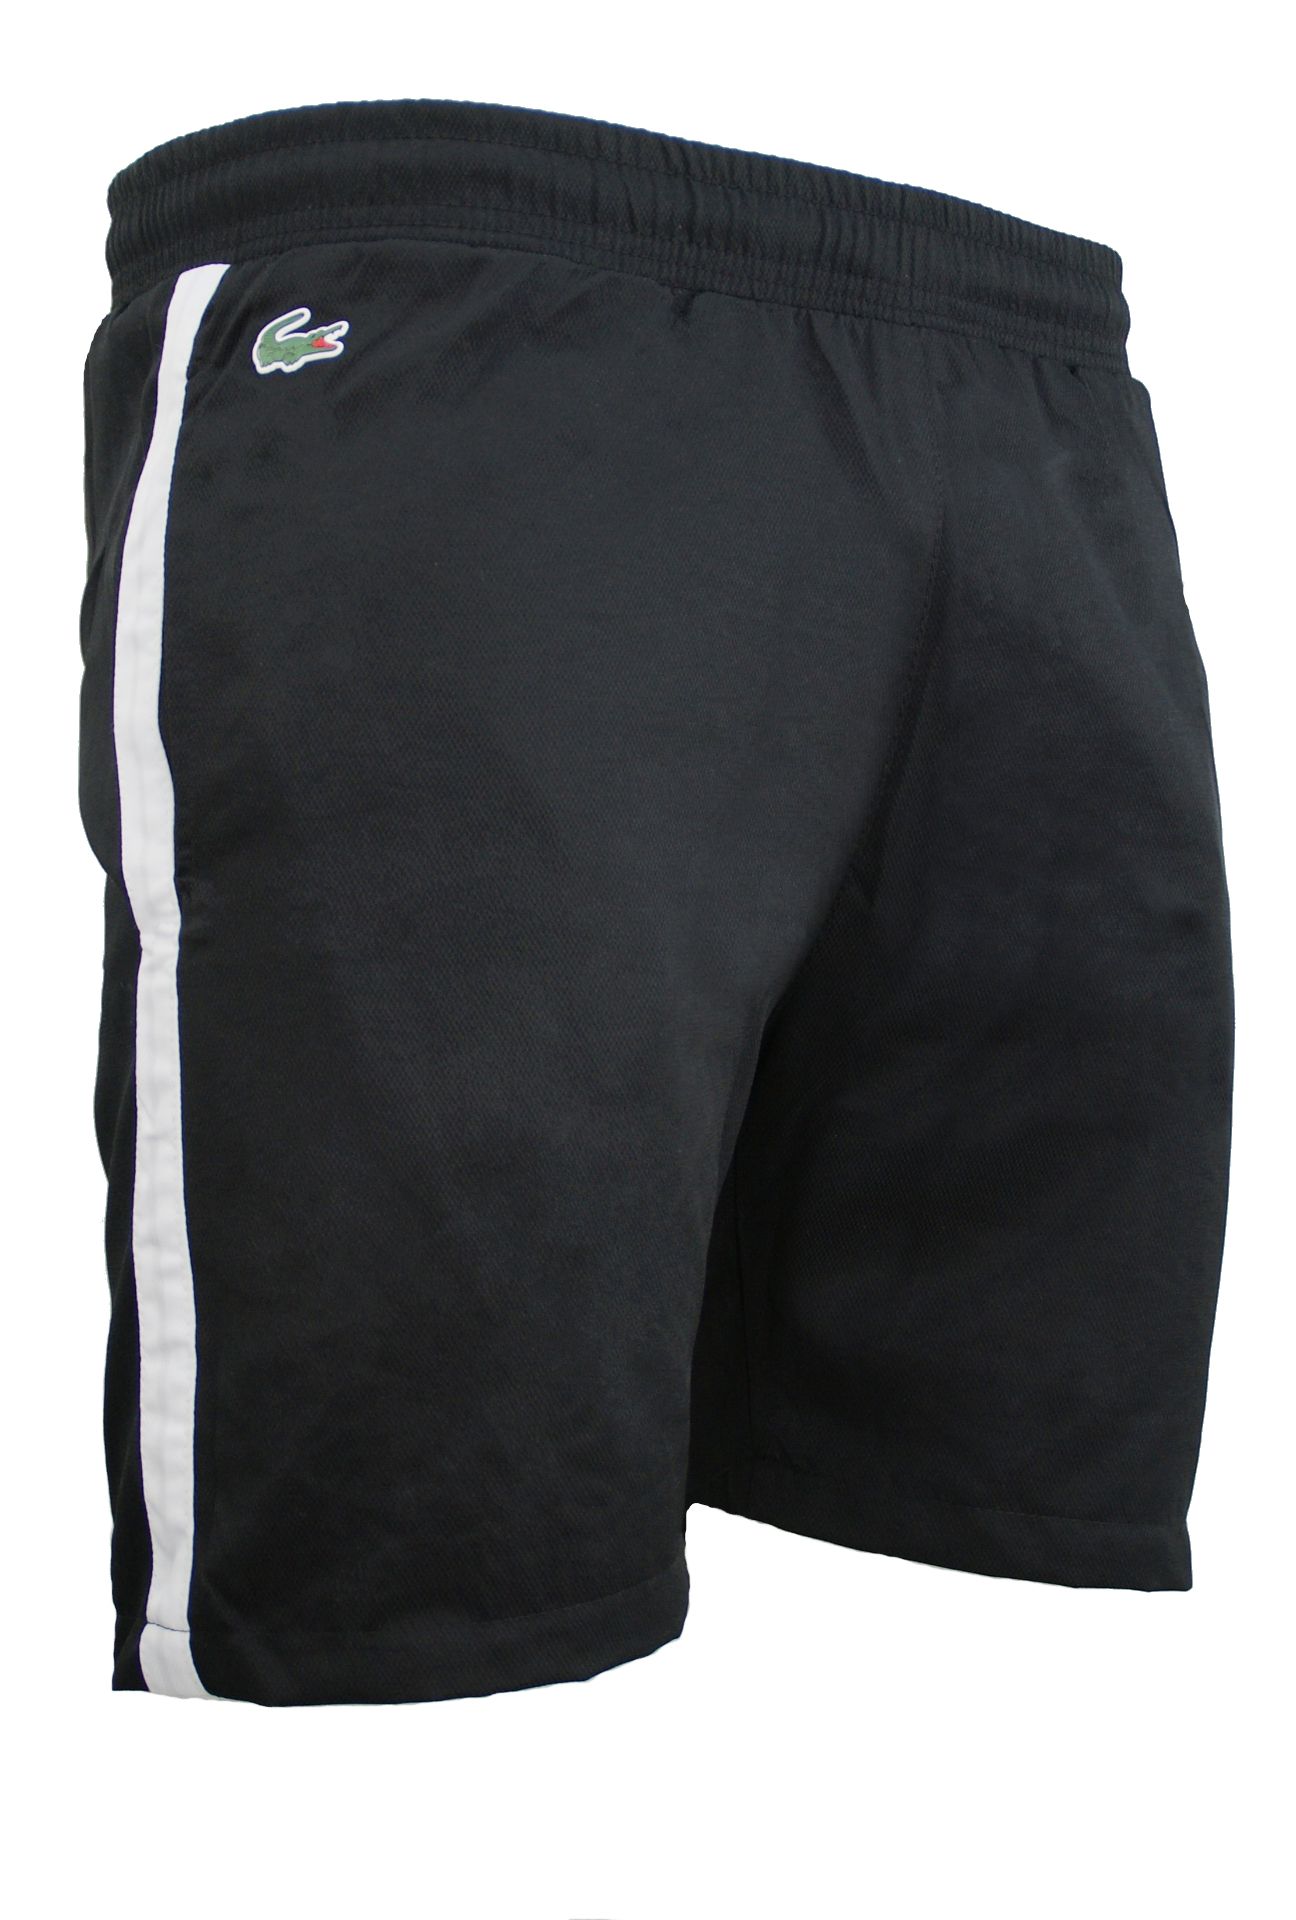 Logo Sweat Shorts Short Lacoste pour homme en coloris Noir Homme Vêtements Articles de sport et dentraînement Shorts de sport 